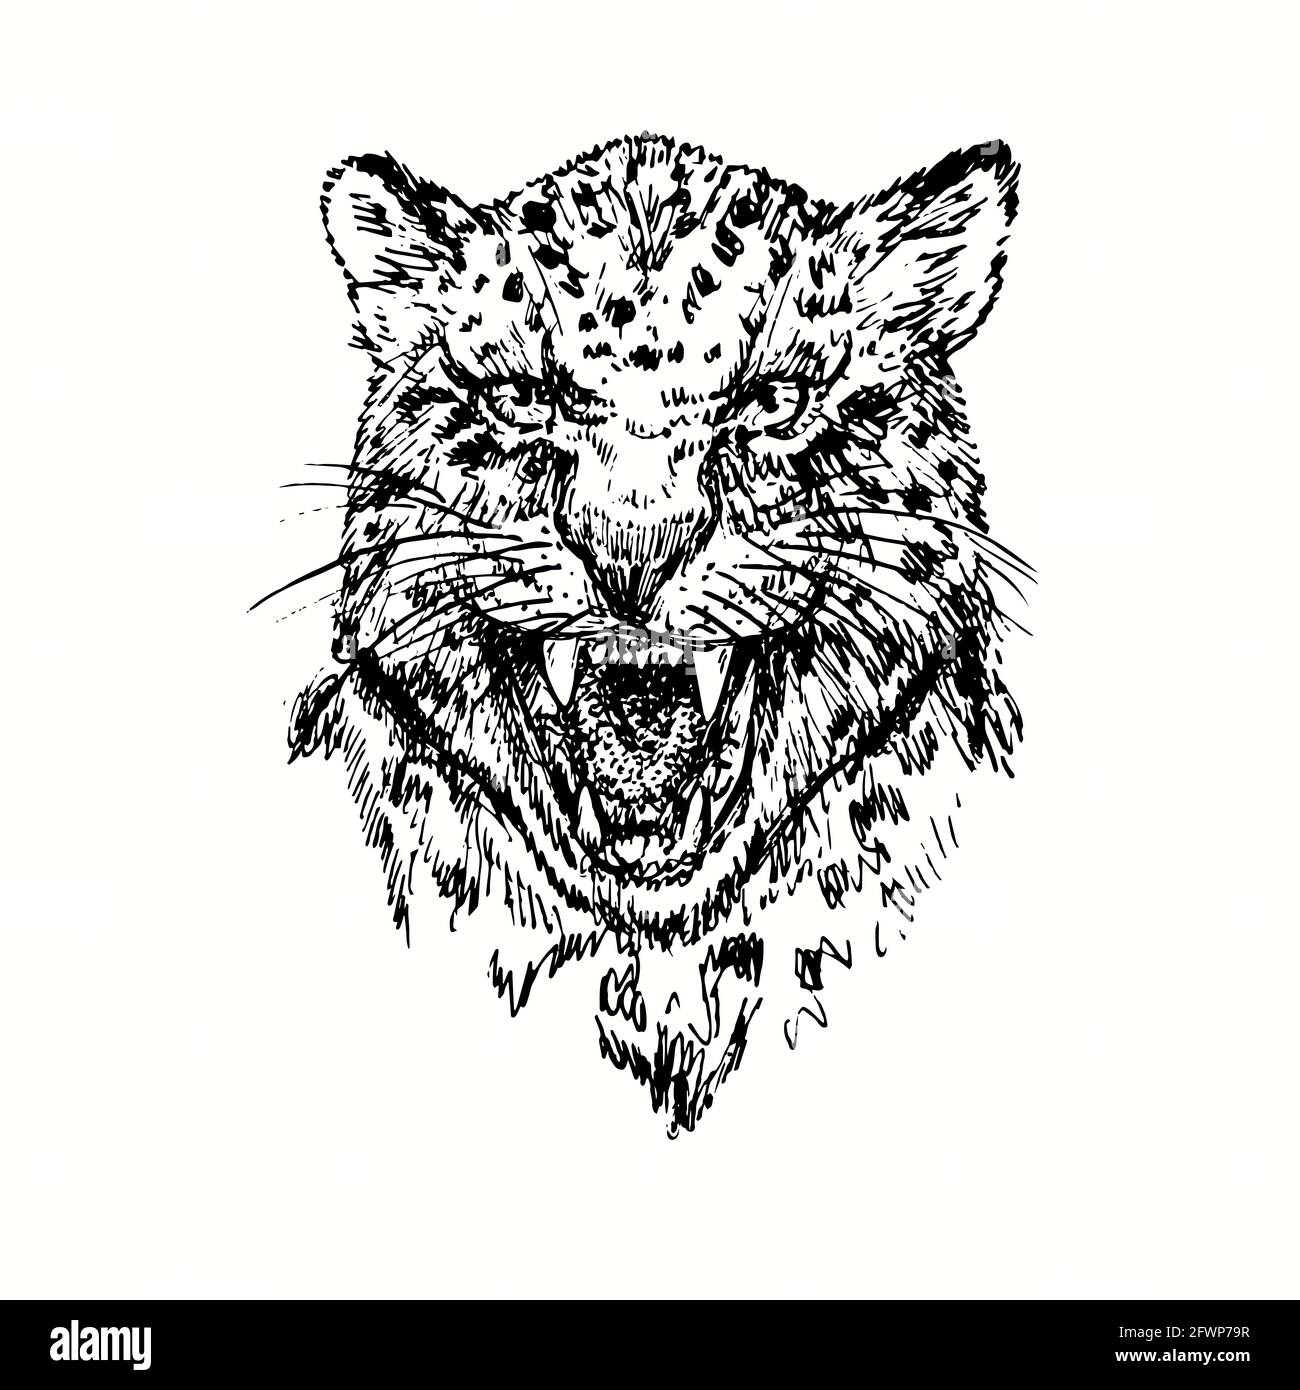 Geparden knurrende Schnauze. Tusche schwarz-weiße Doodle Zeichnung im Holzschnitt-Stil. Stockfoto